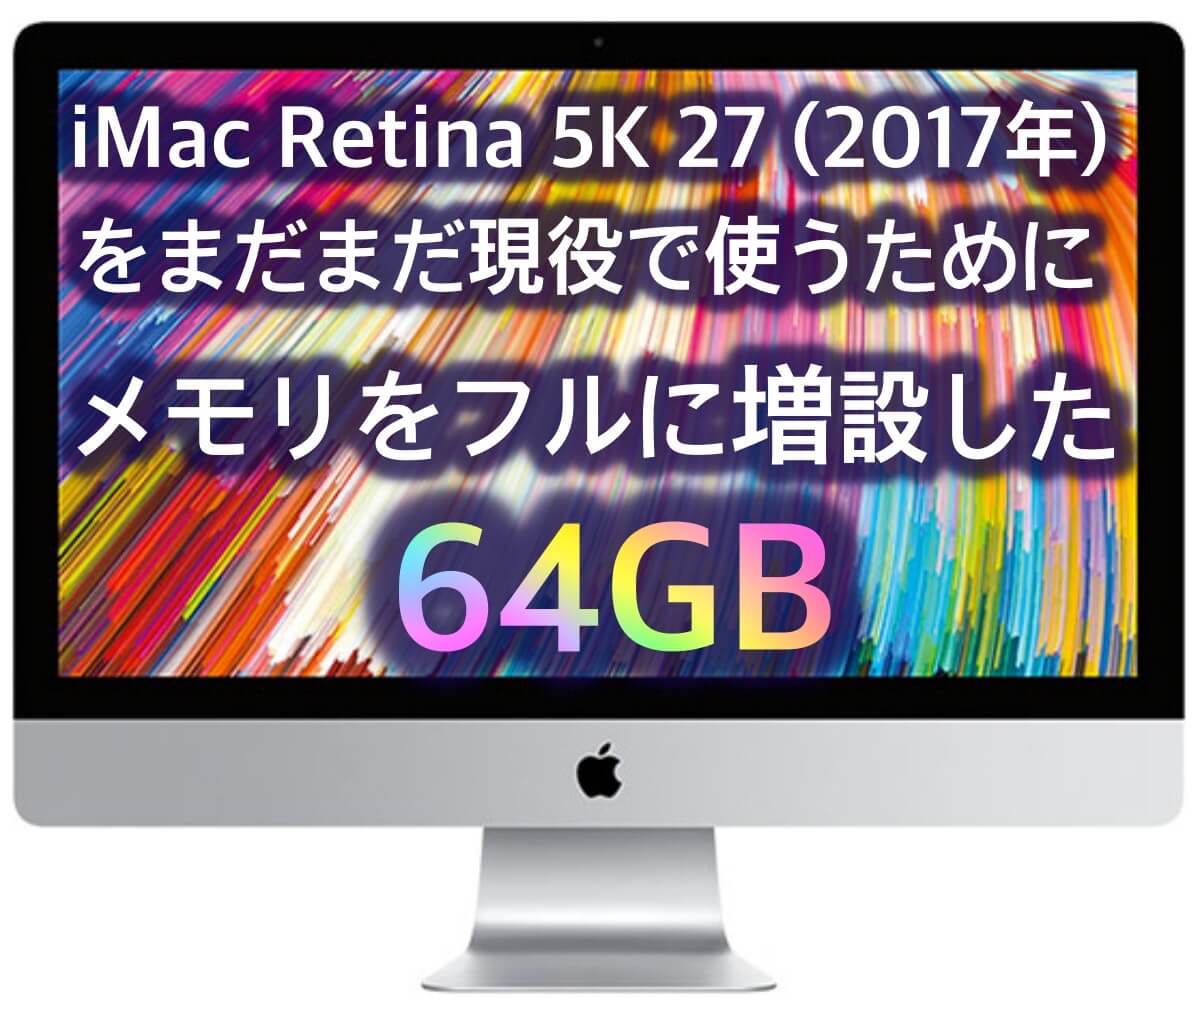 iMac 27 2017はまだまだ現役❗メモリ最大64GBへ増設 | ああてぃくる